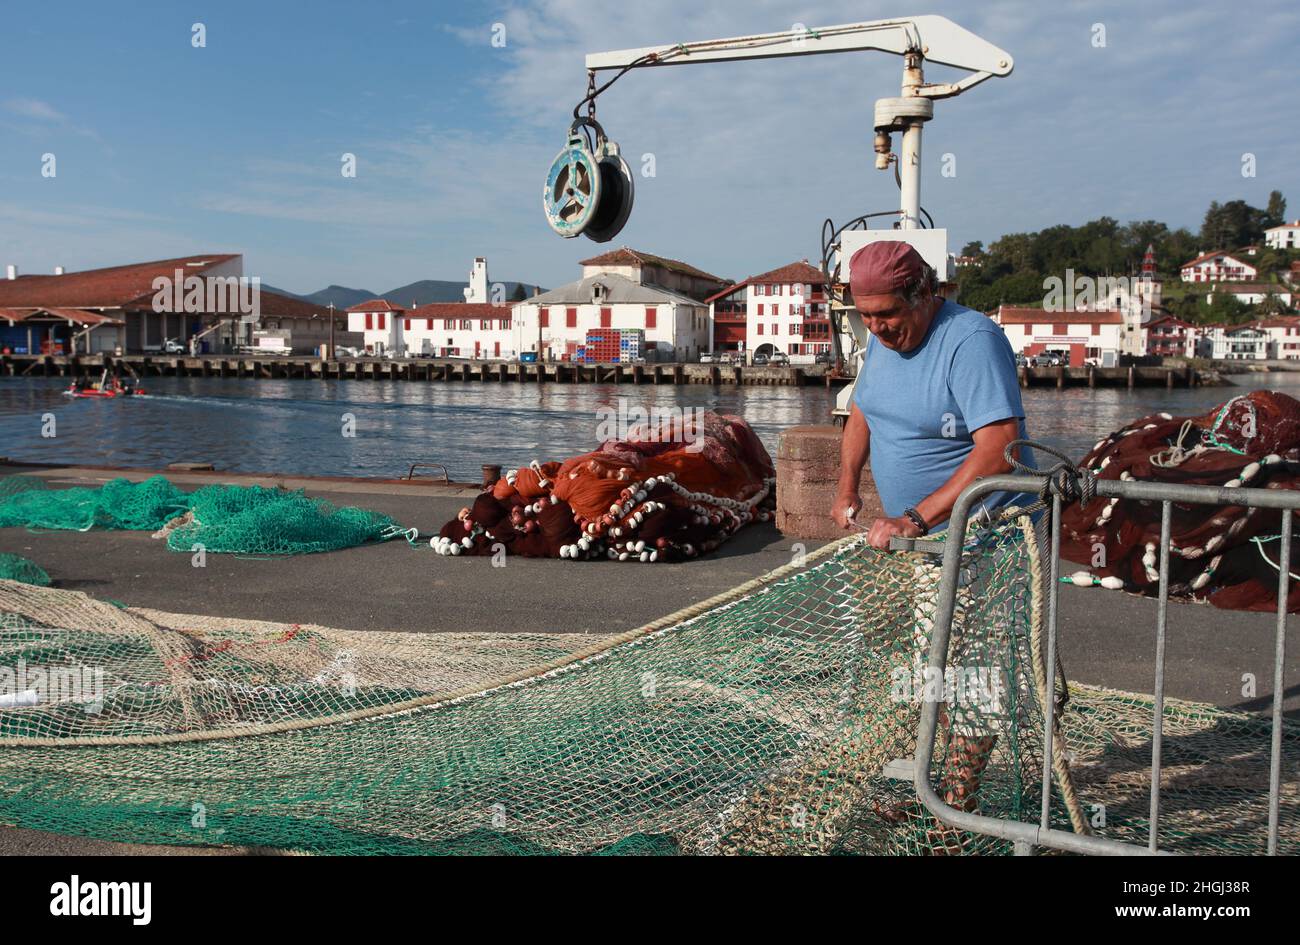 Pêcheur local réparant ses filets de pêche sur le quai du port de St Jean de Luz, pays Basque, Nouvelle Aquitaine Banque D'Images